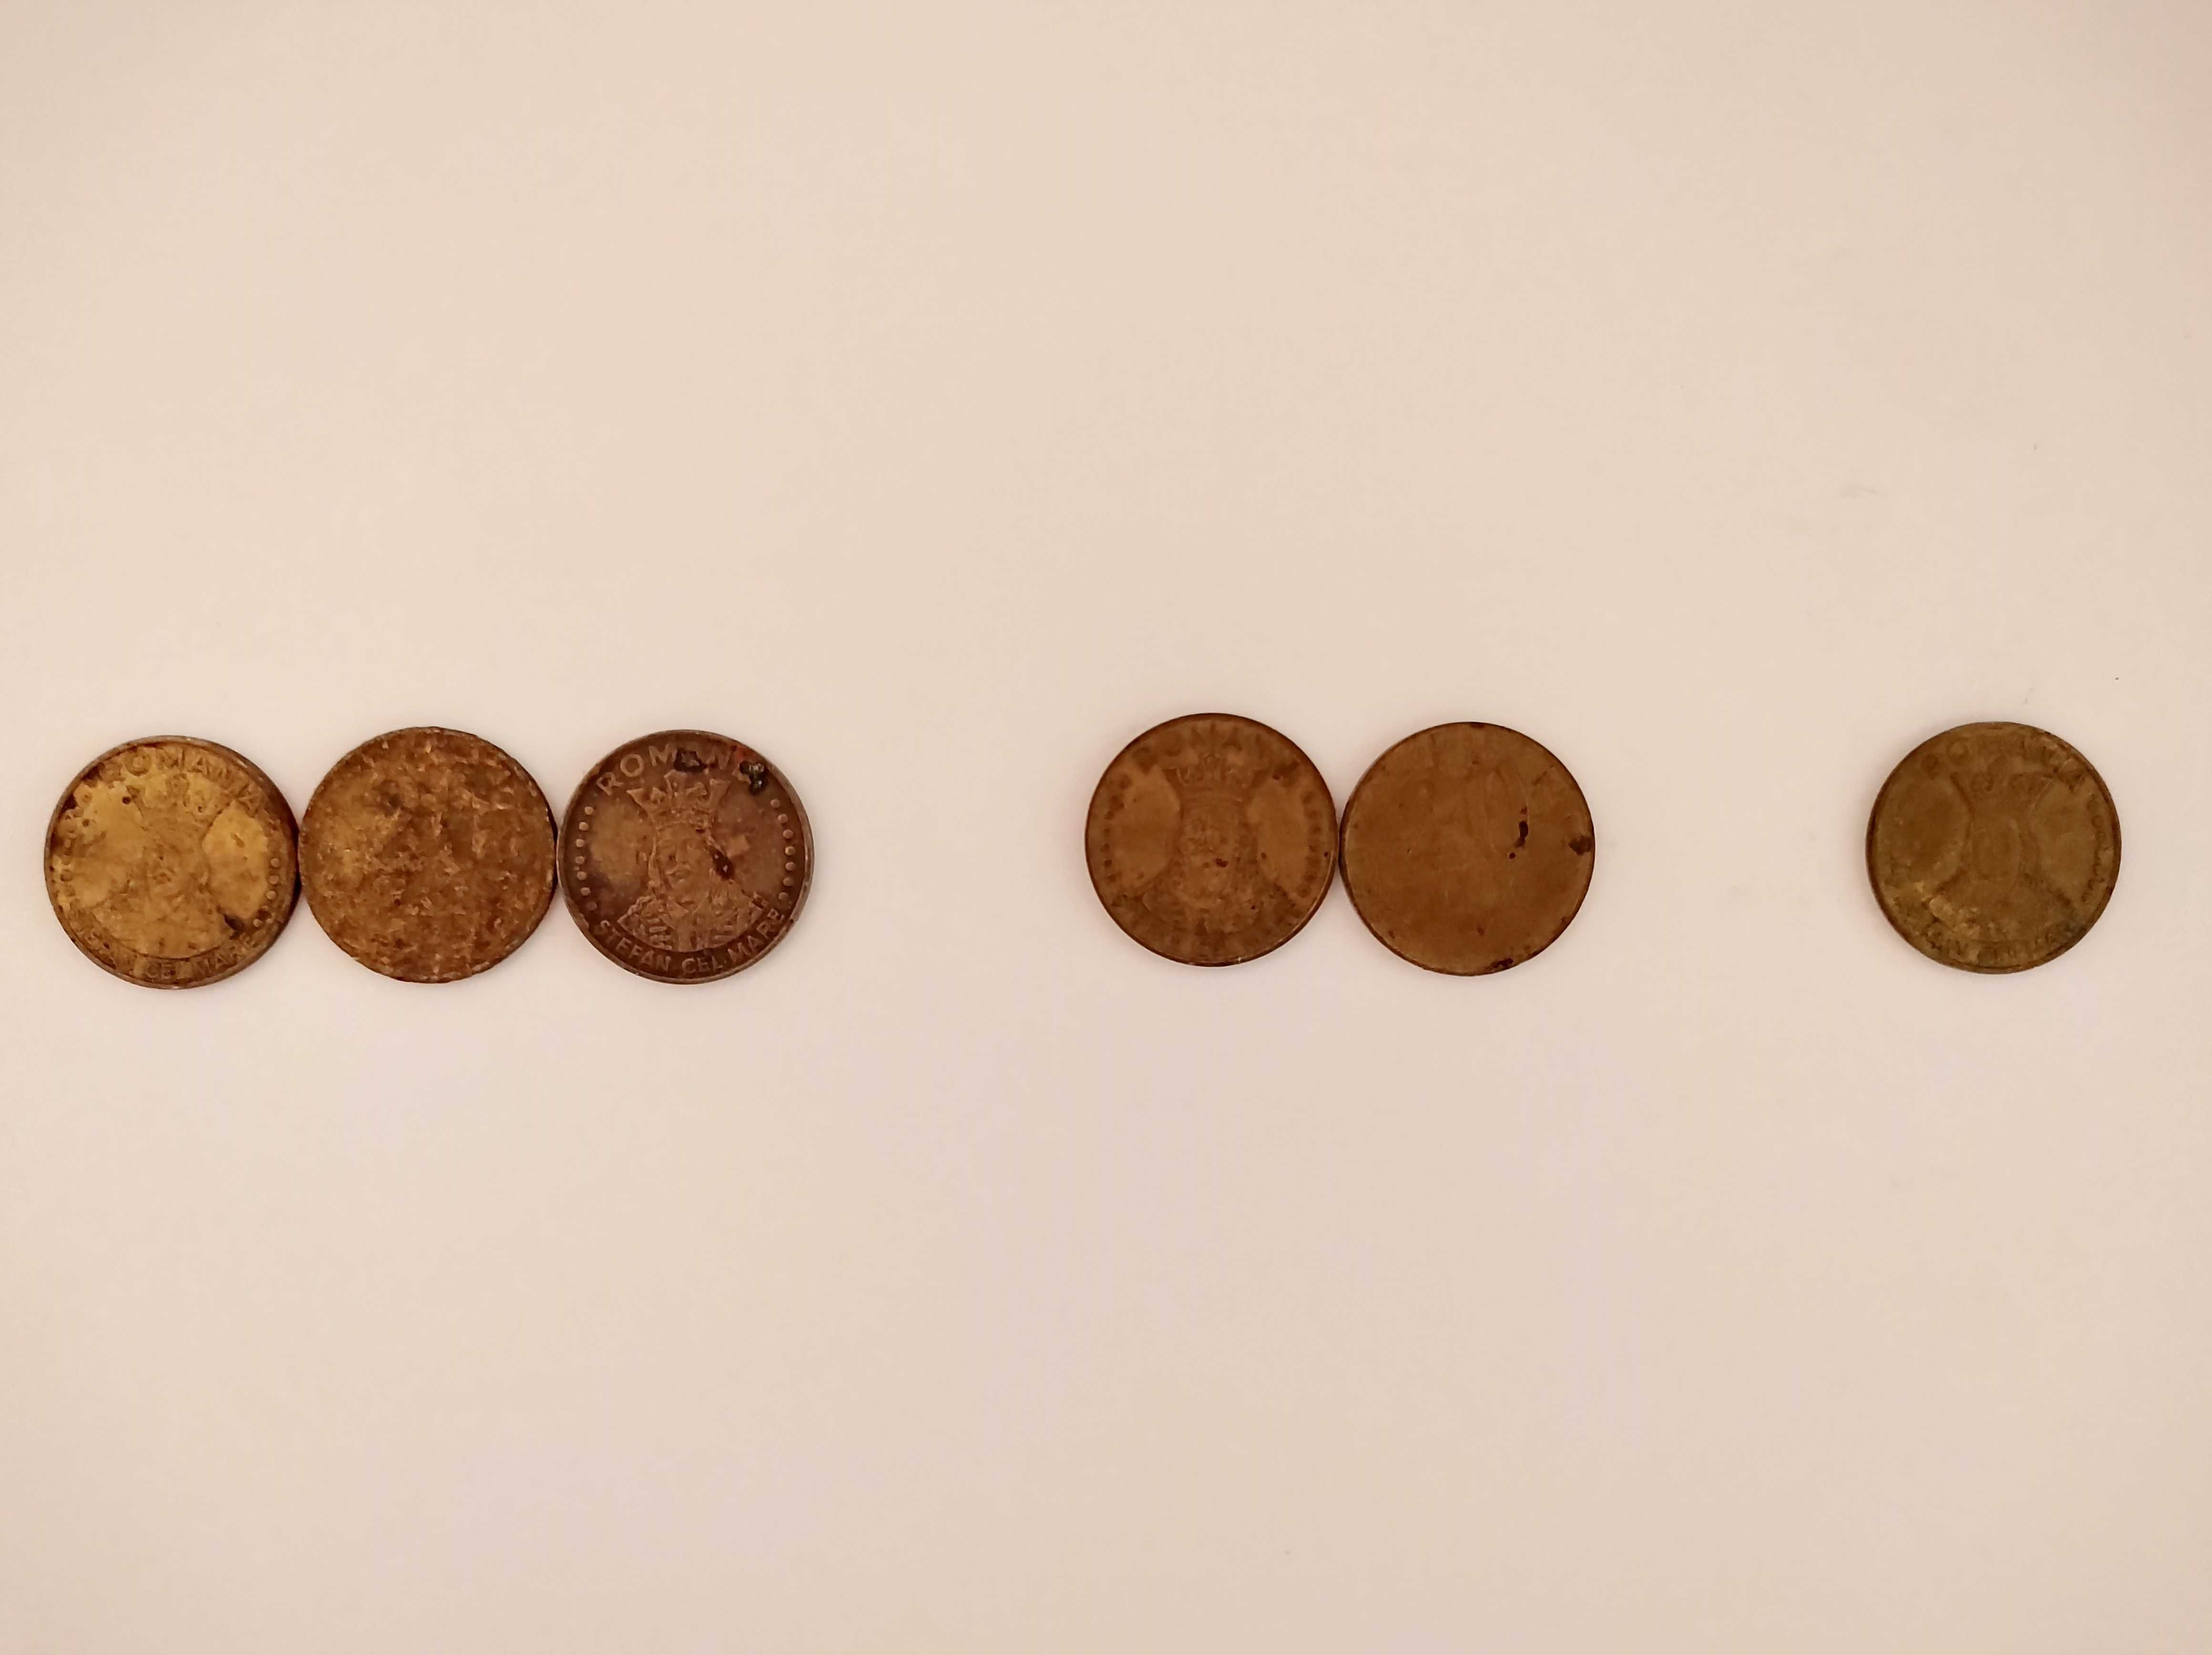 Vand monede de 20 lei, 3 din 1991, 2 din 1992 si 1 din 1993.